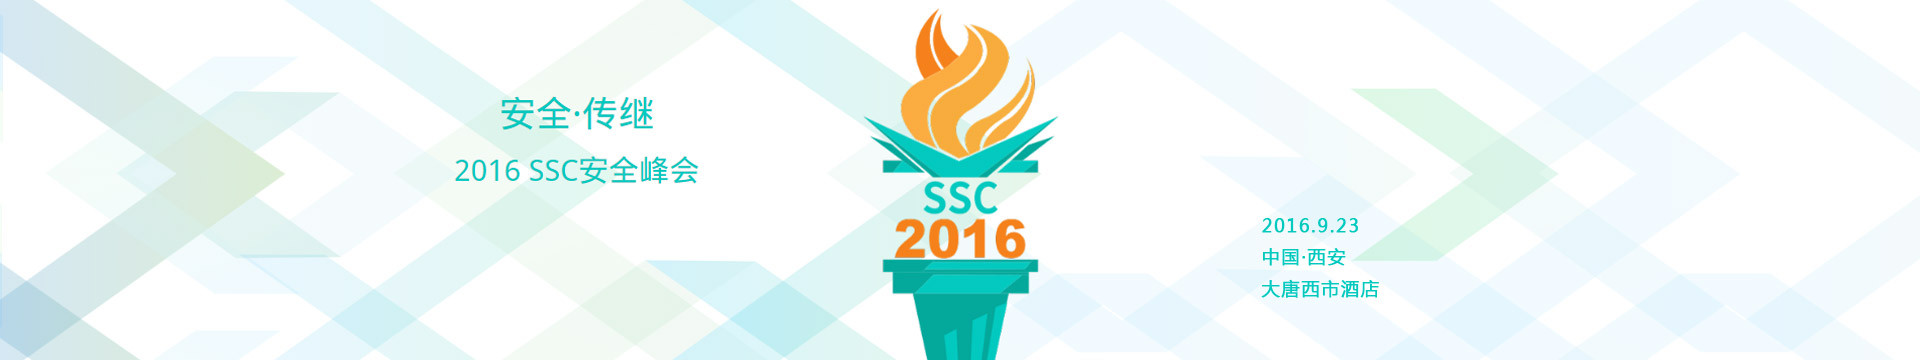 2016 SSC安全峰会